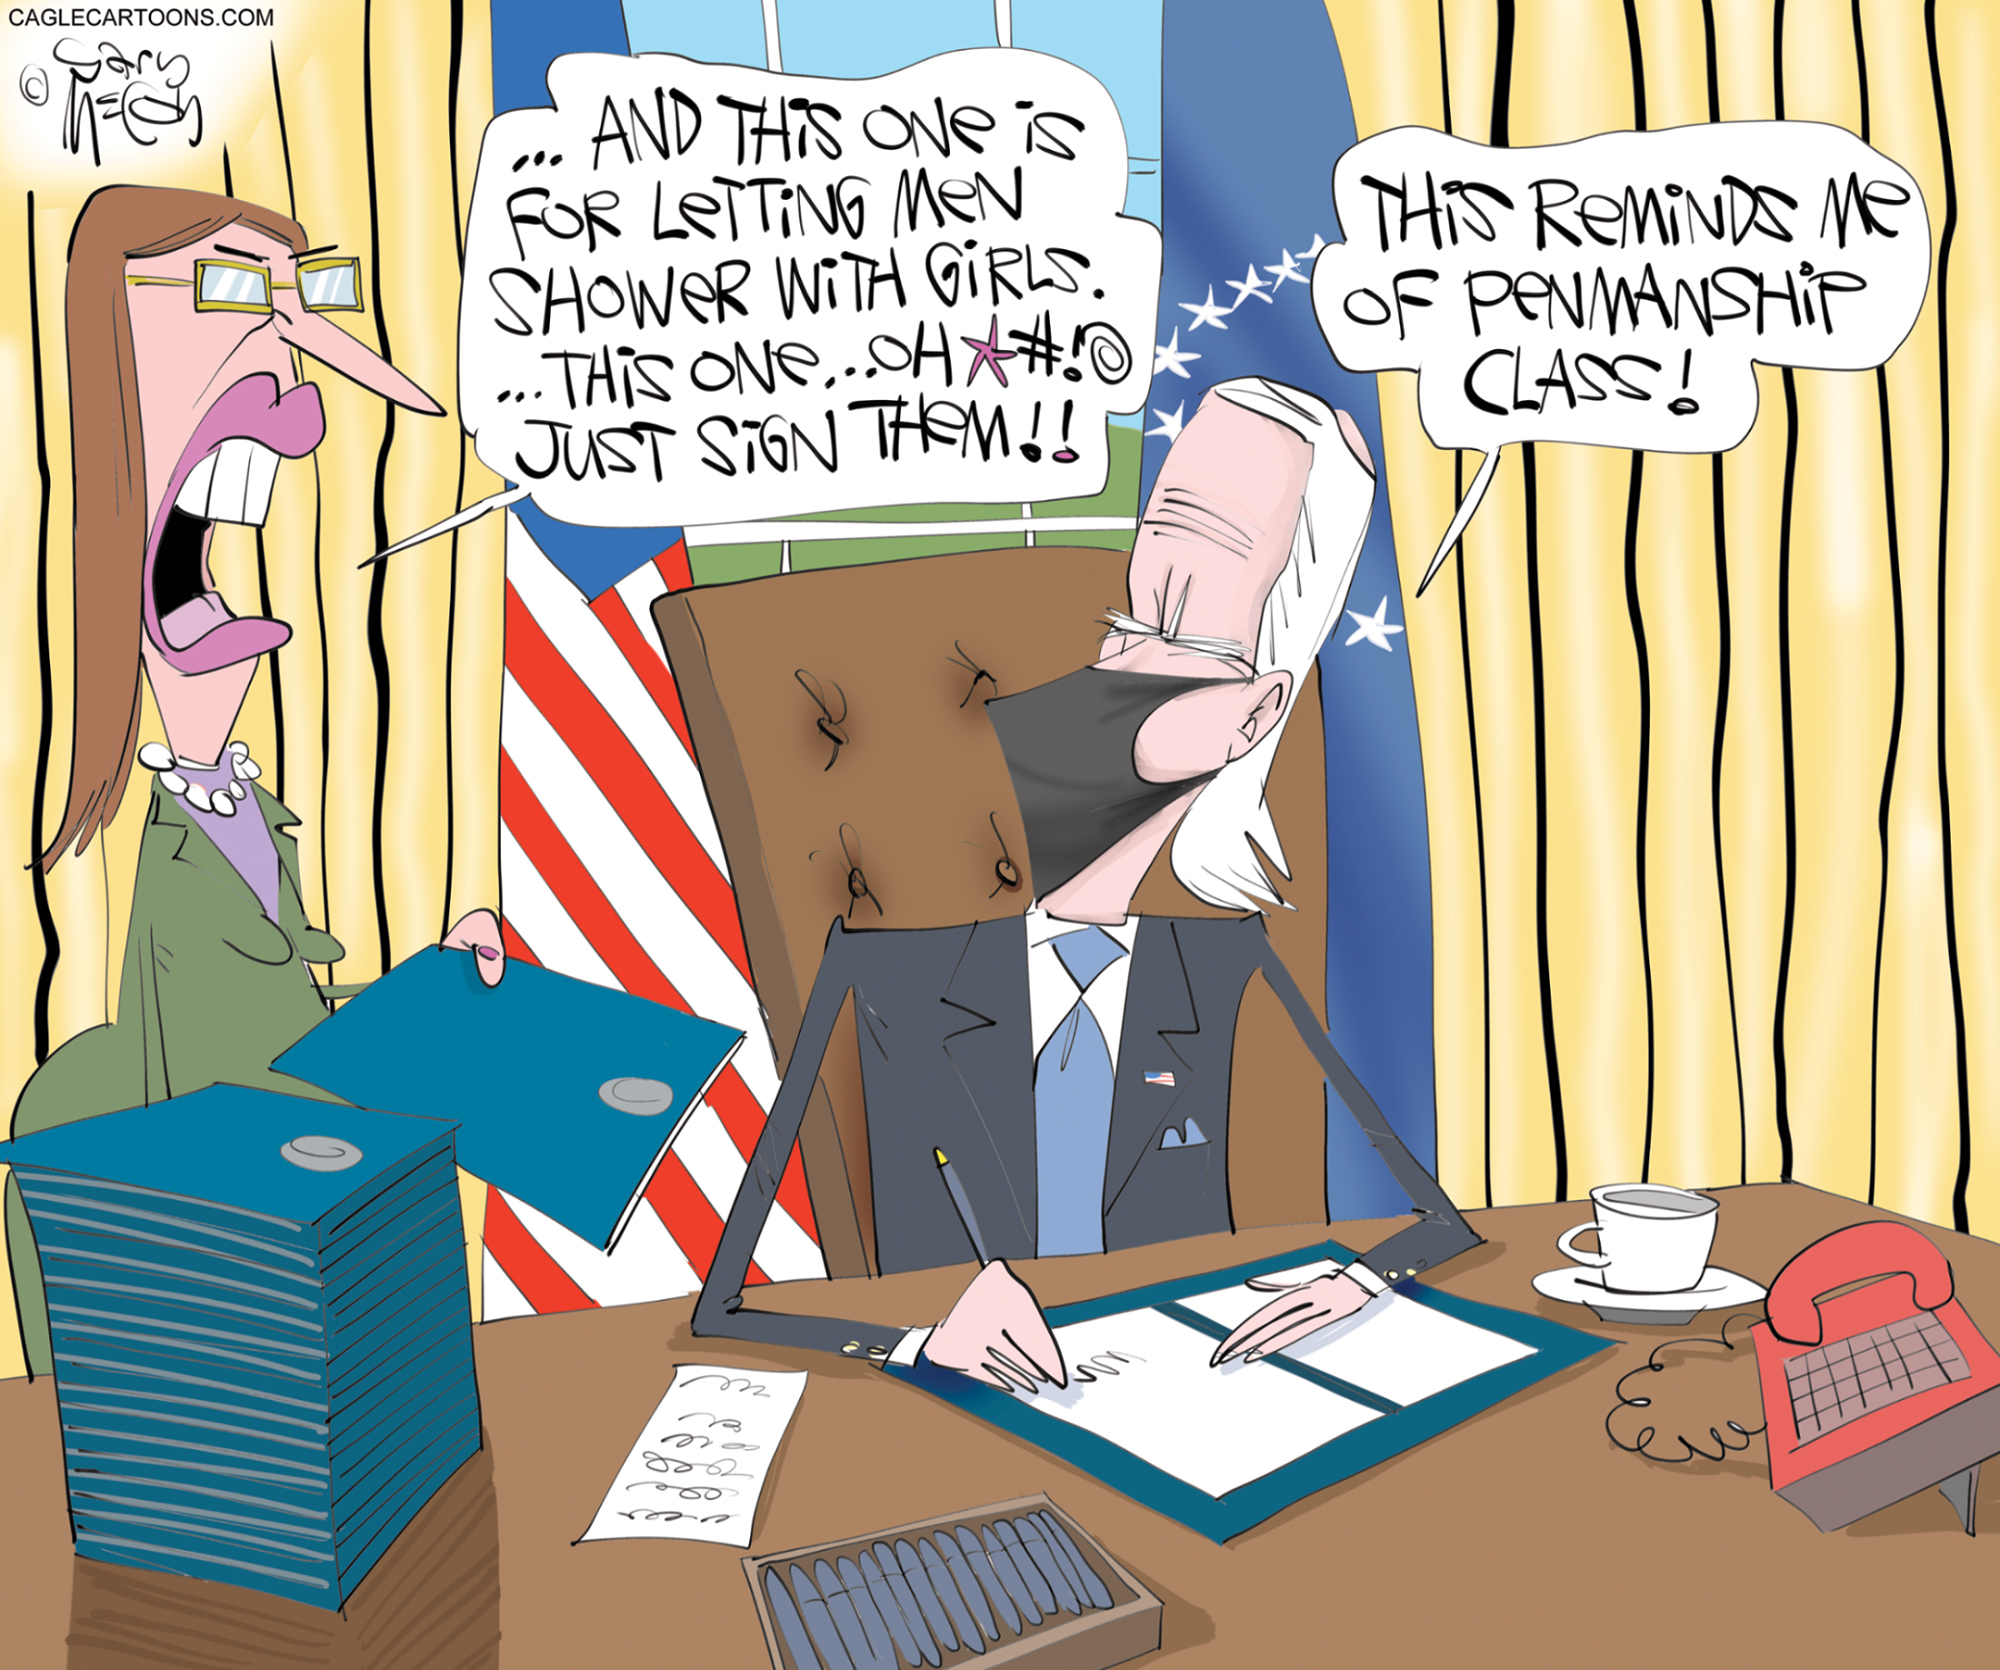 Biden Executive Orders